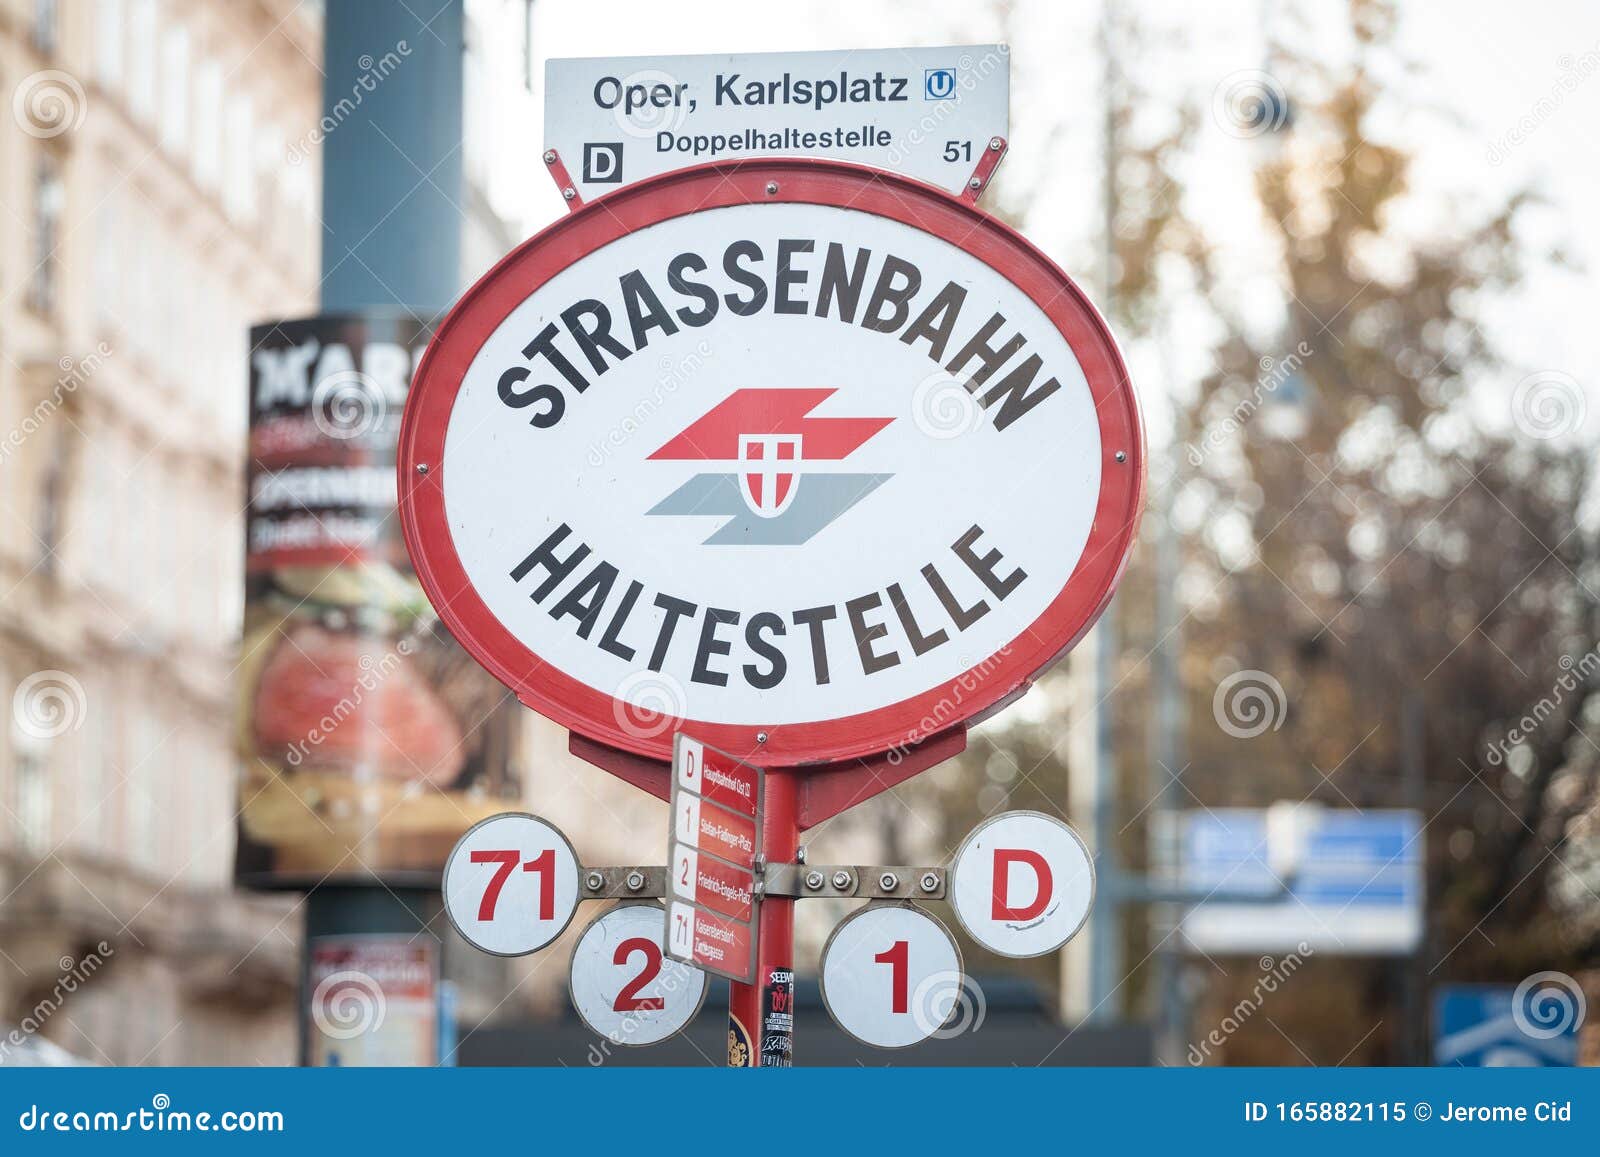 Knopf Straßenbahn Österreich Wiener Verkehrsbetriebe Tram bouton button 24mm wei